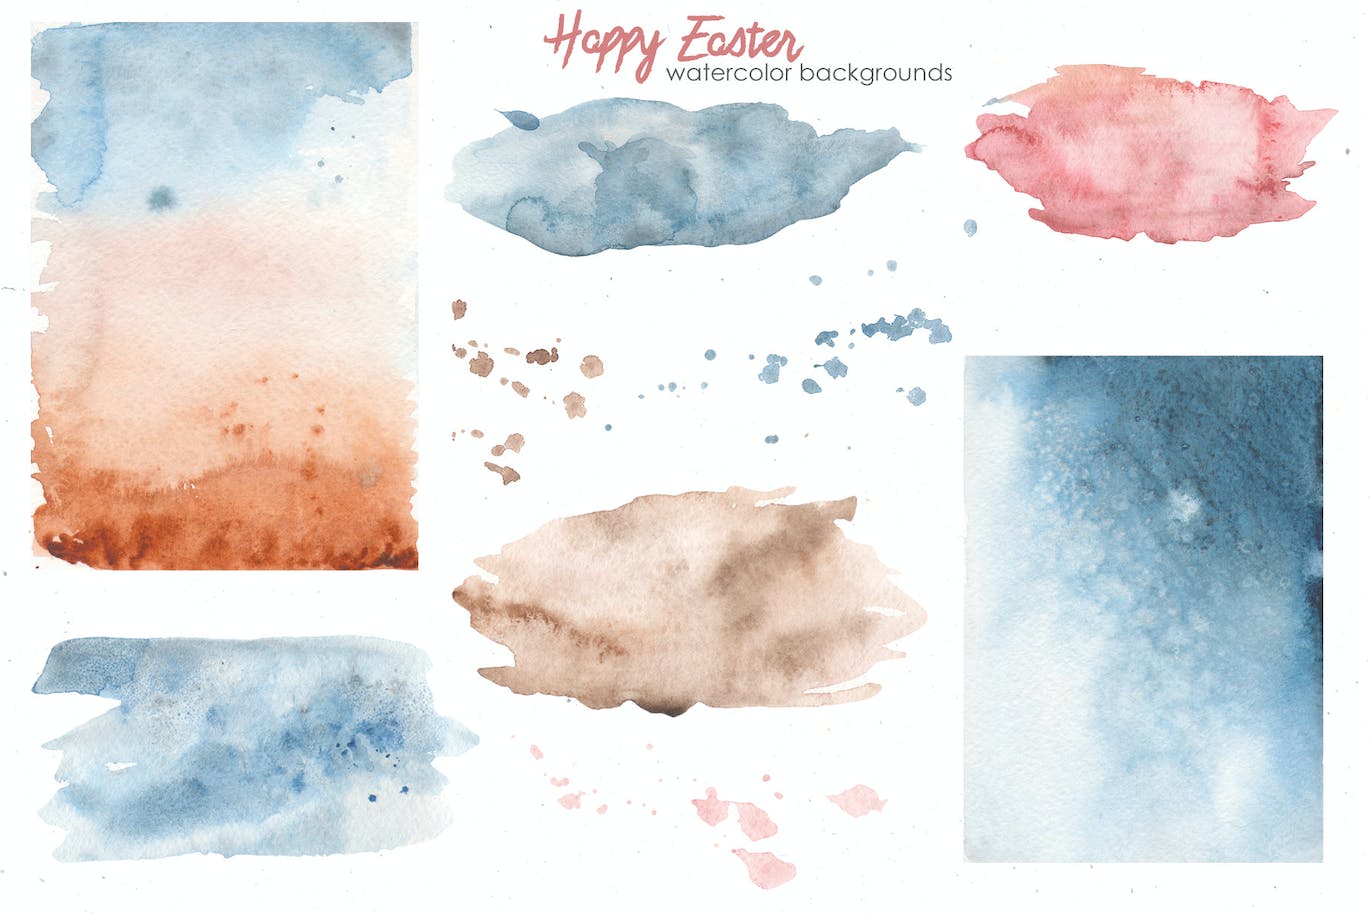 复活节快乐元素水彩画集 Happy Easter watercolor APP UI 第10张